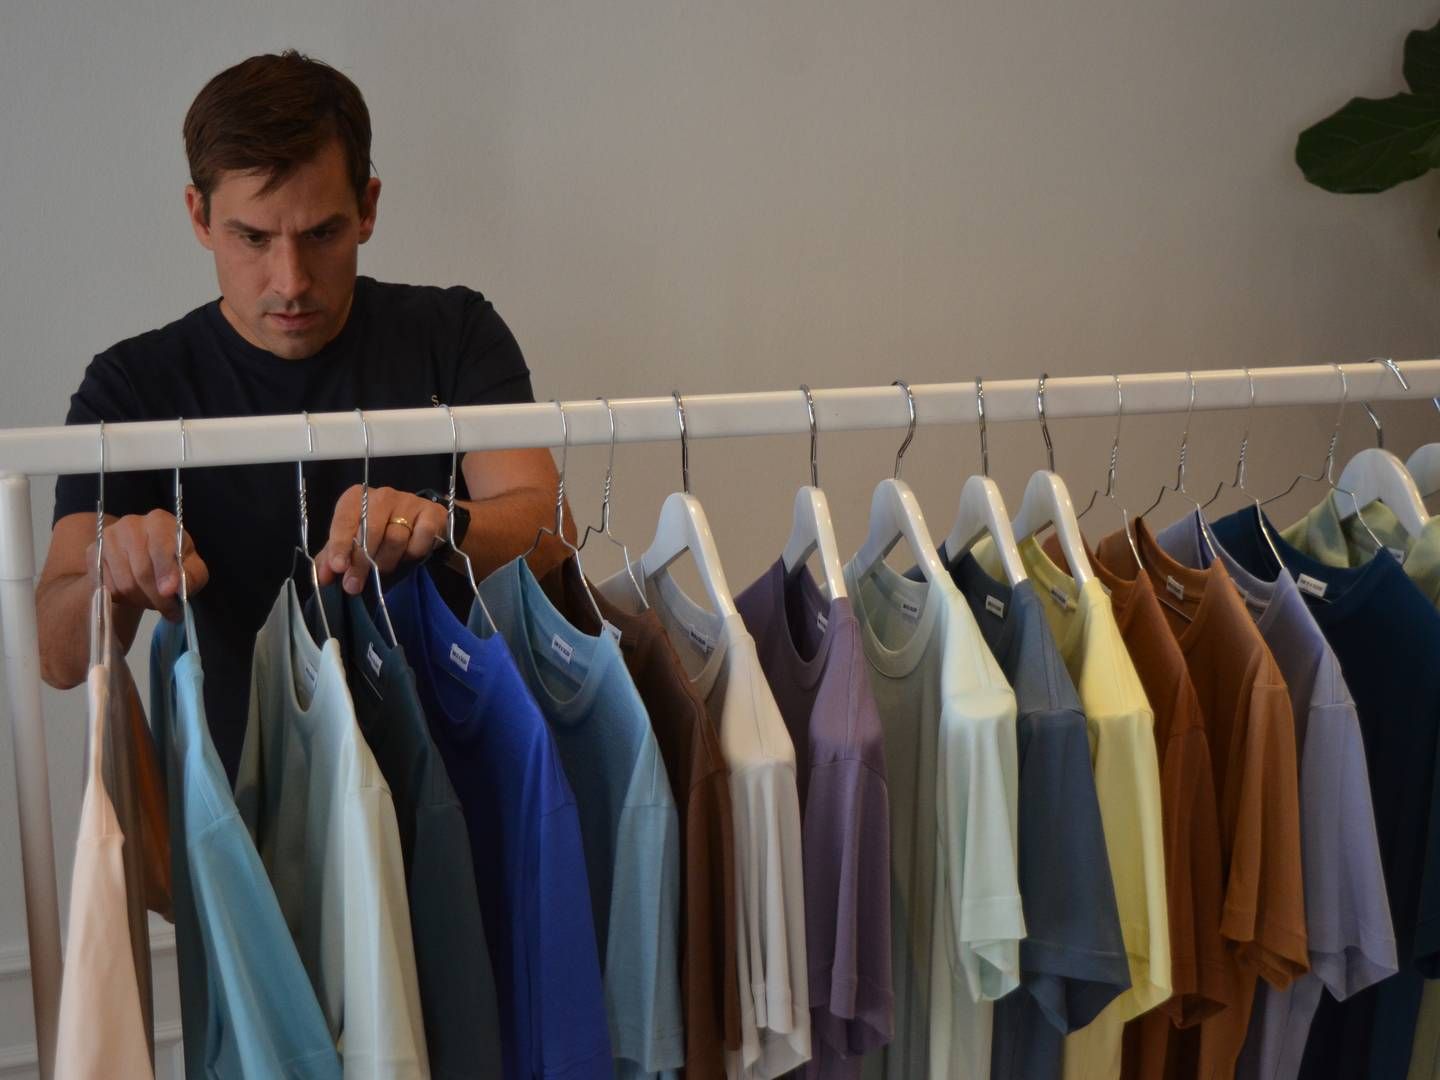 Herretøjsvirksomheden Son of a Tailor vil tage et opgør med den etablerede modeindustris overproduktion, som stifter Jess Fleischer mener er "forældet bæredygtighedsmæssigt." | Foto: Alexander Thorup